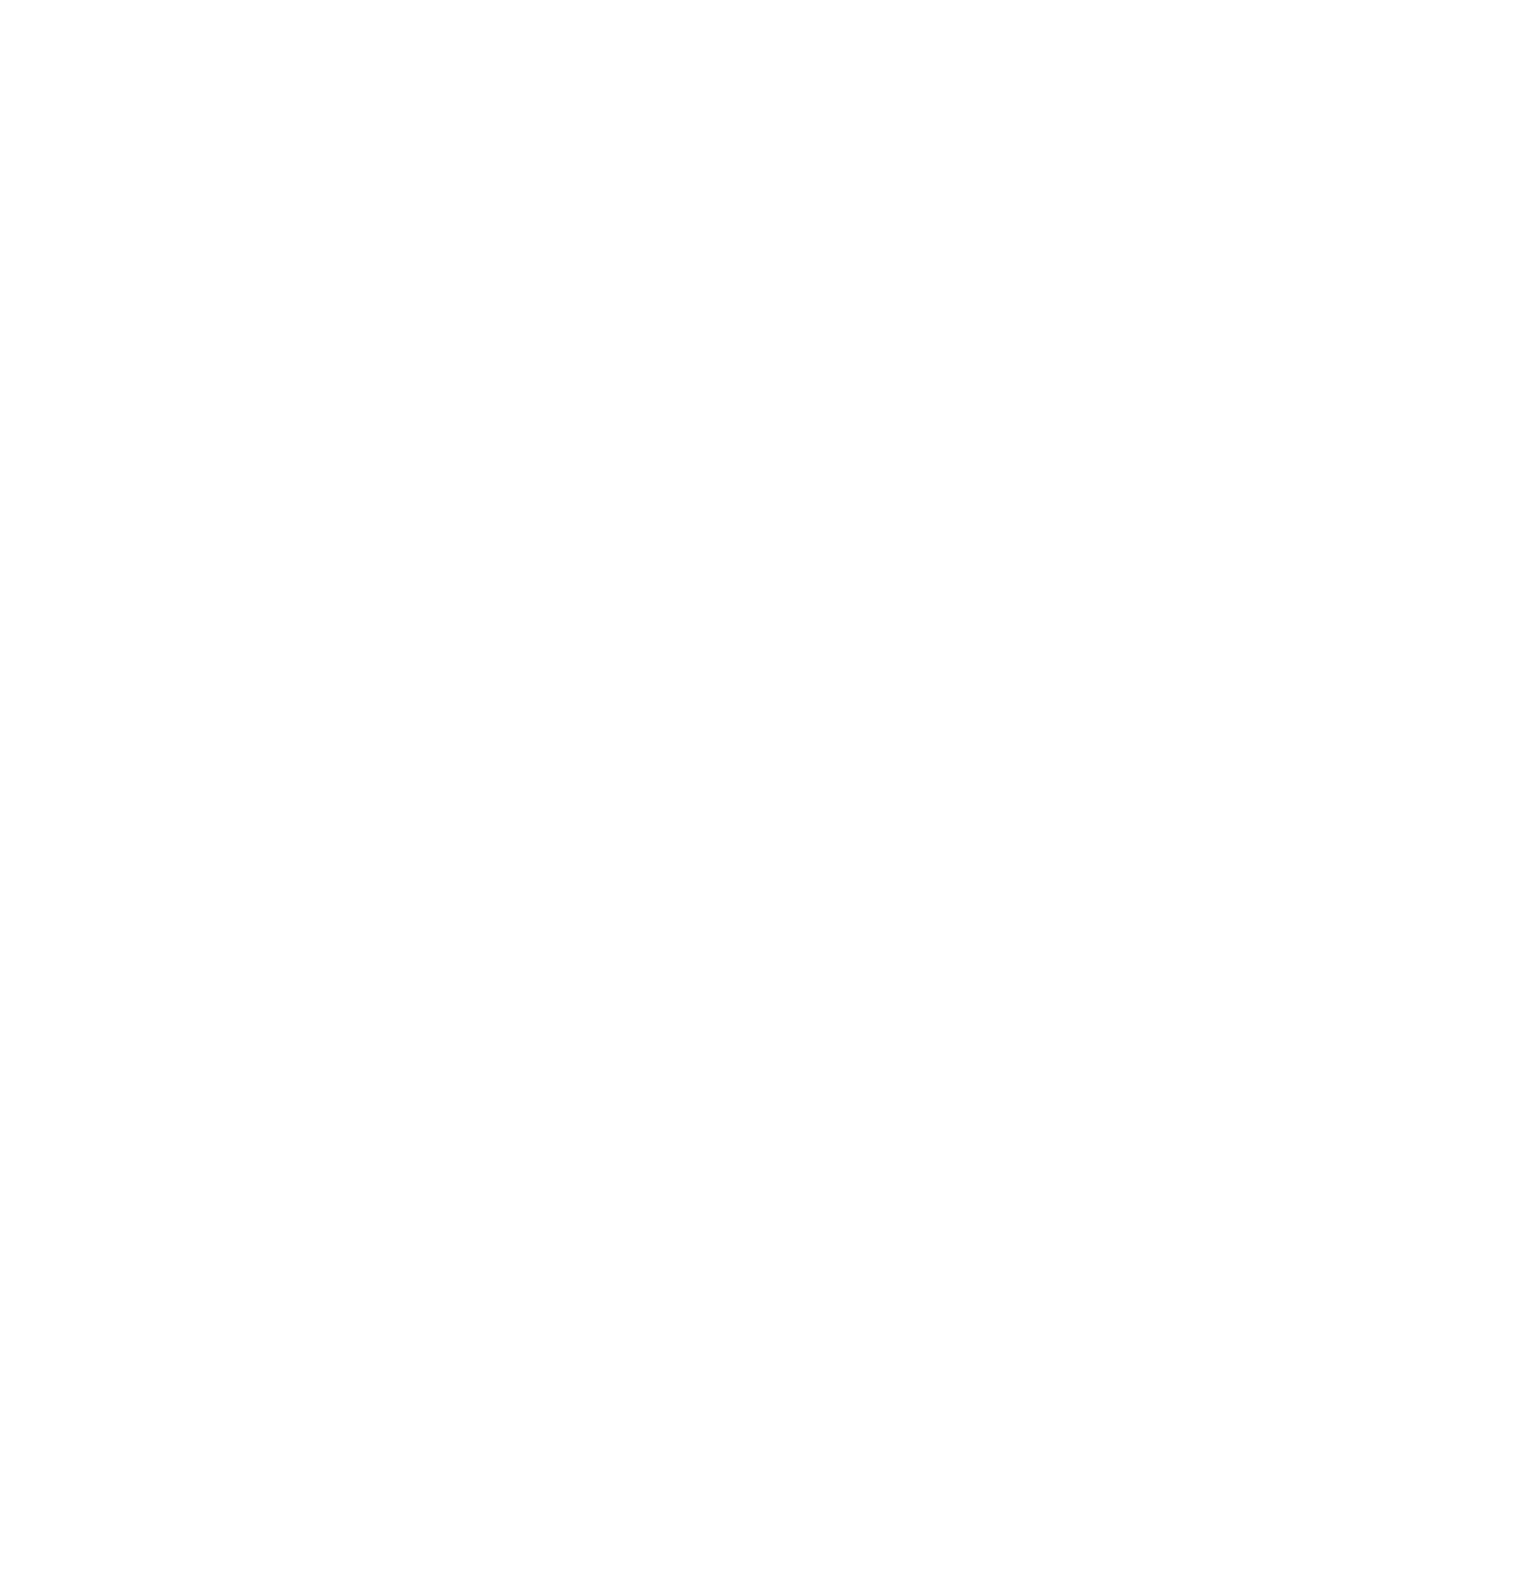 Amphenol logo for dark backgrounds (transparent PNG)